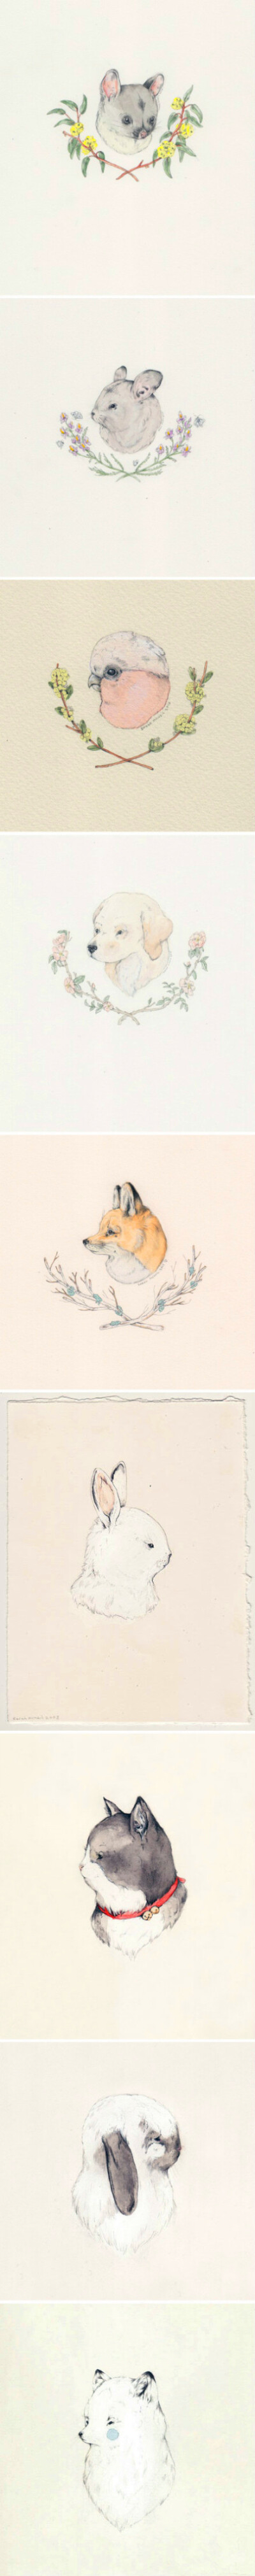 【绘画素材】清新淡雅的 彩铅+水彩 手绘小动物。作者：Sarah McNeil